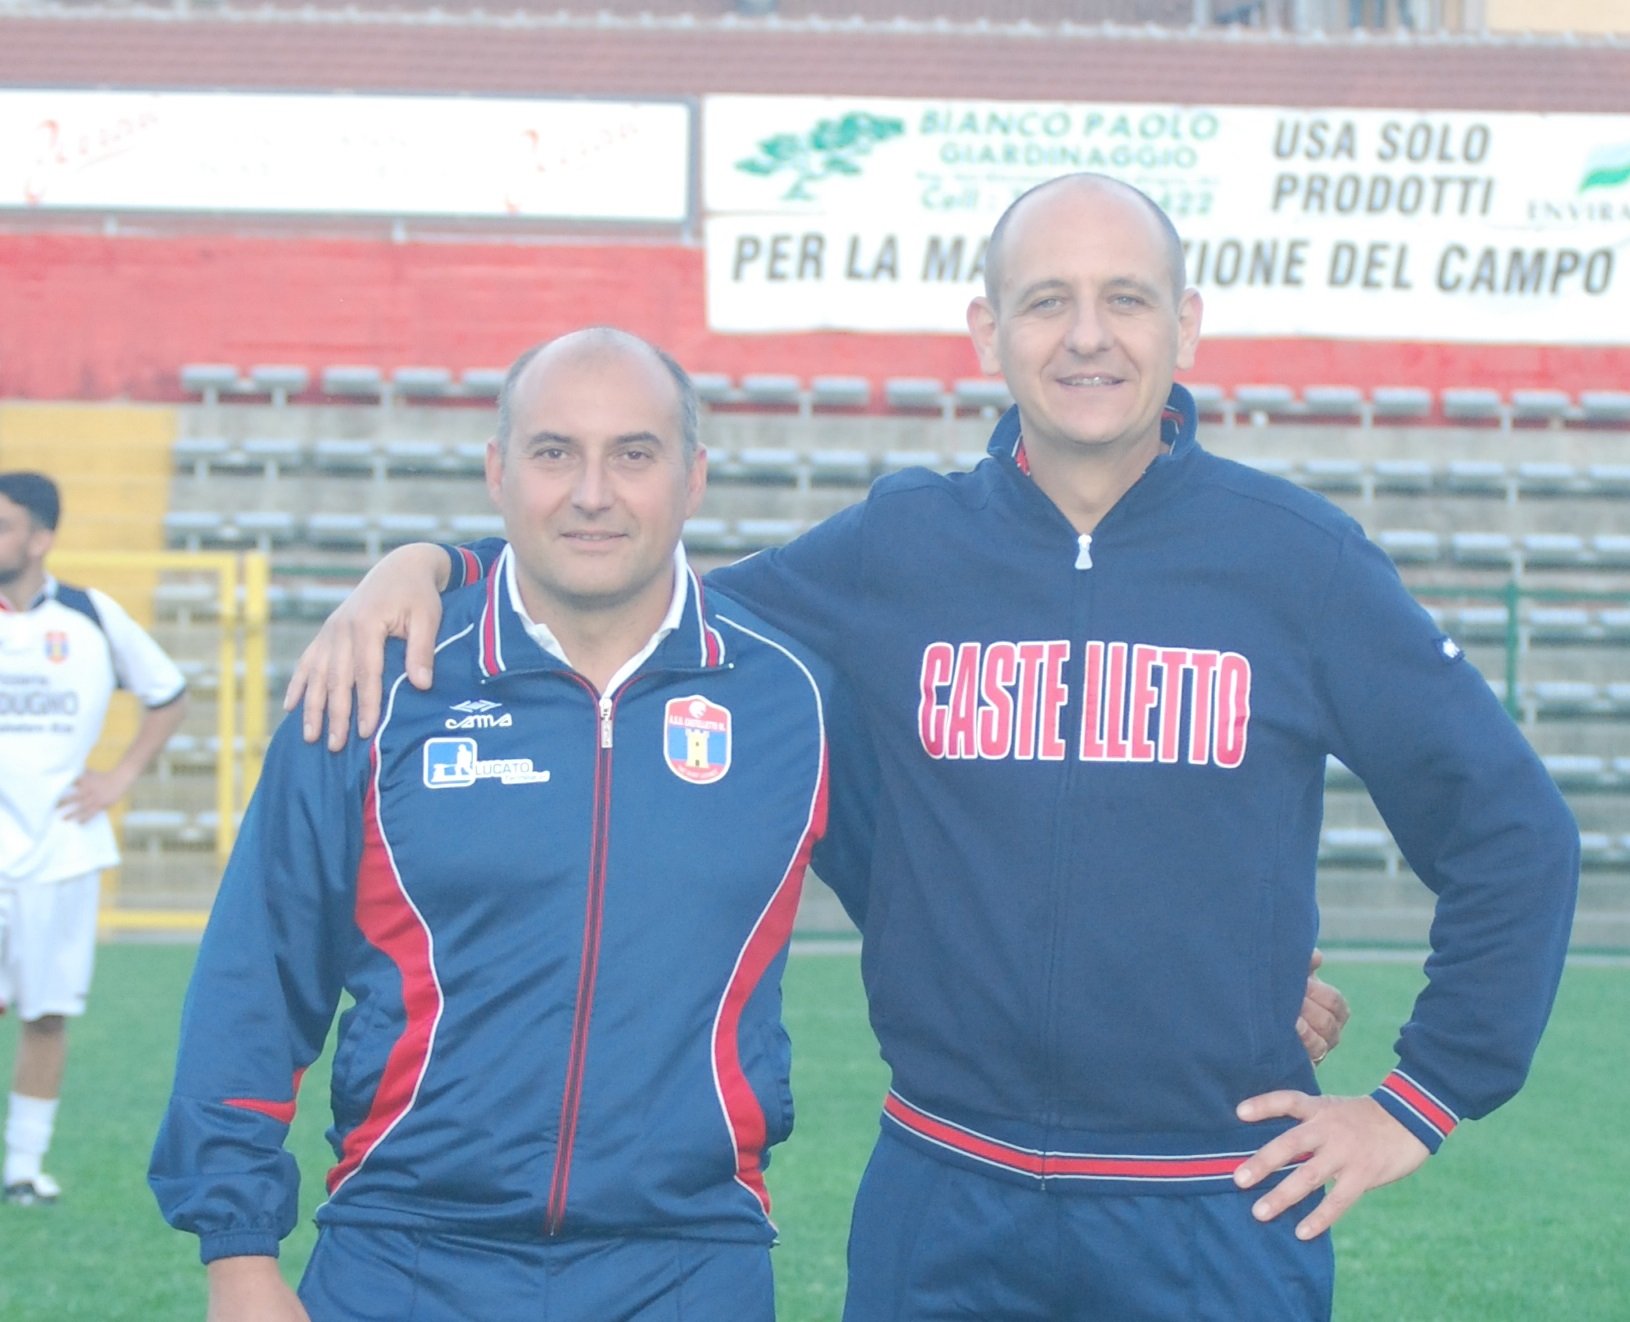 Al Castelletto un mister goleador: “Anche a 50 anni suonati”